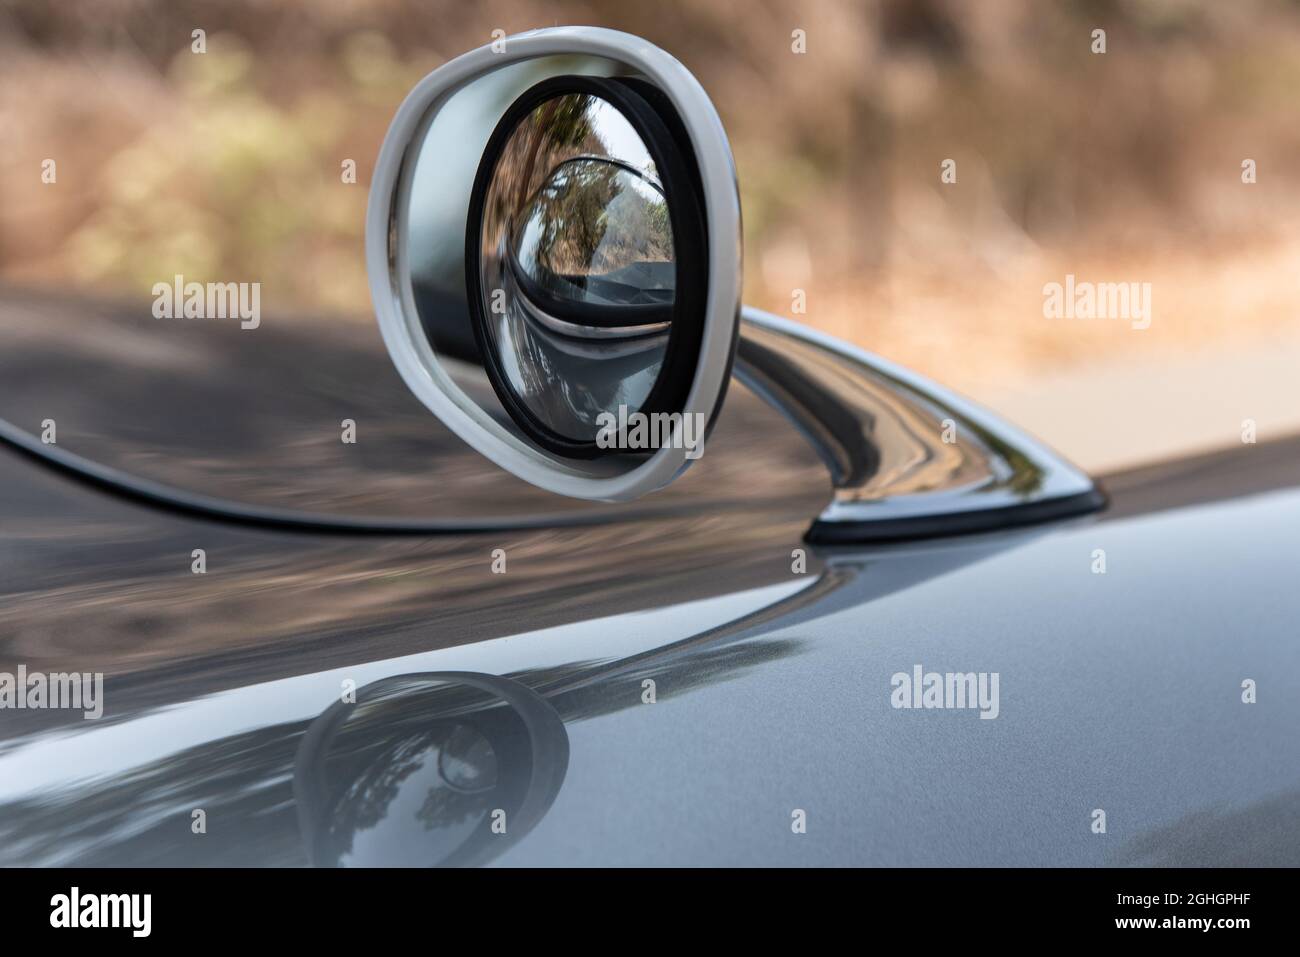 Lo specchio retrovisore cromato lucido con obiettivo grandangolare convesso e gonfio di un'auto sportiva senza tempo ha linee lunghe e curvilinee. Foto Stock